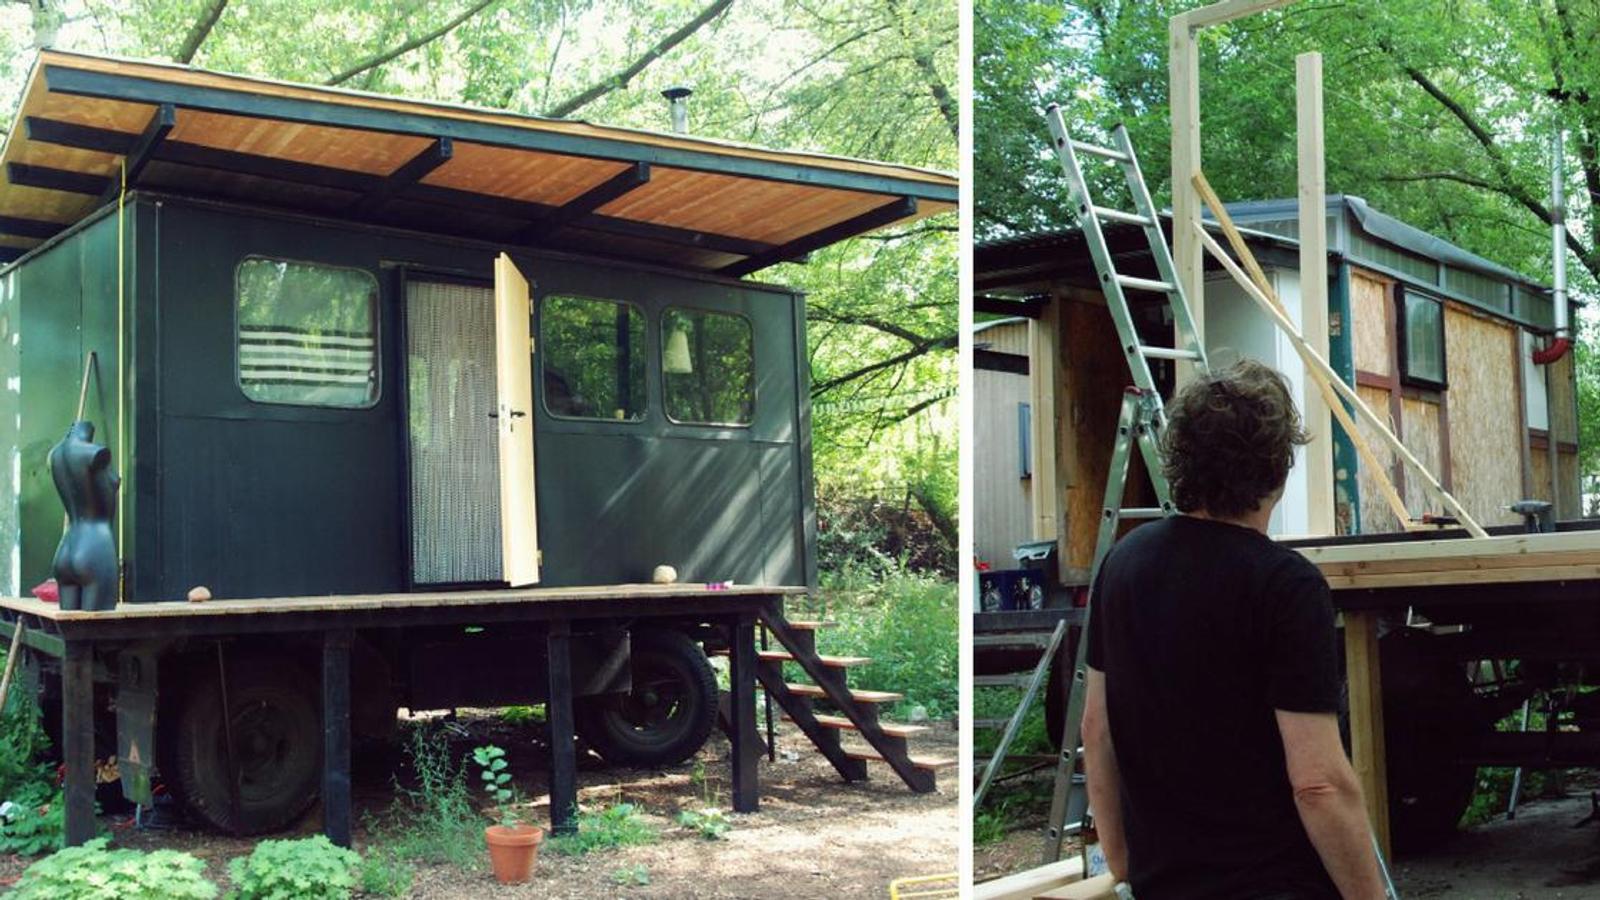 Cet homme construit une incroyable petite maison sur la remorque d'un camion